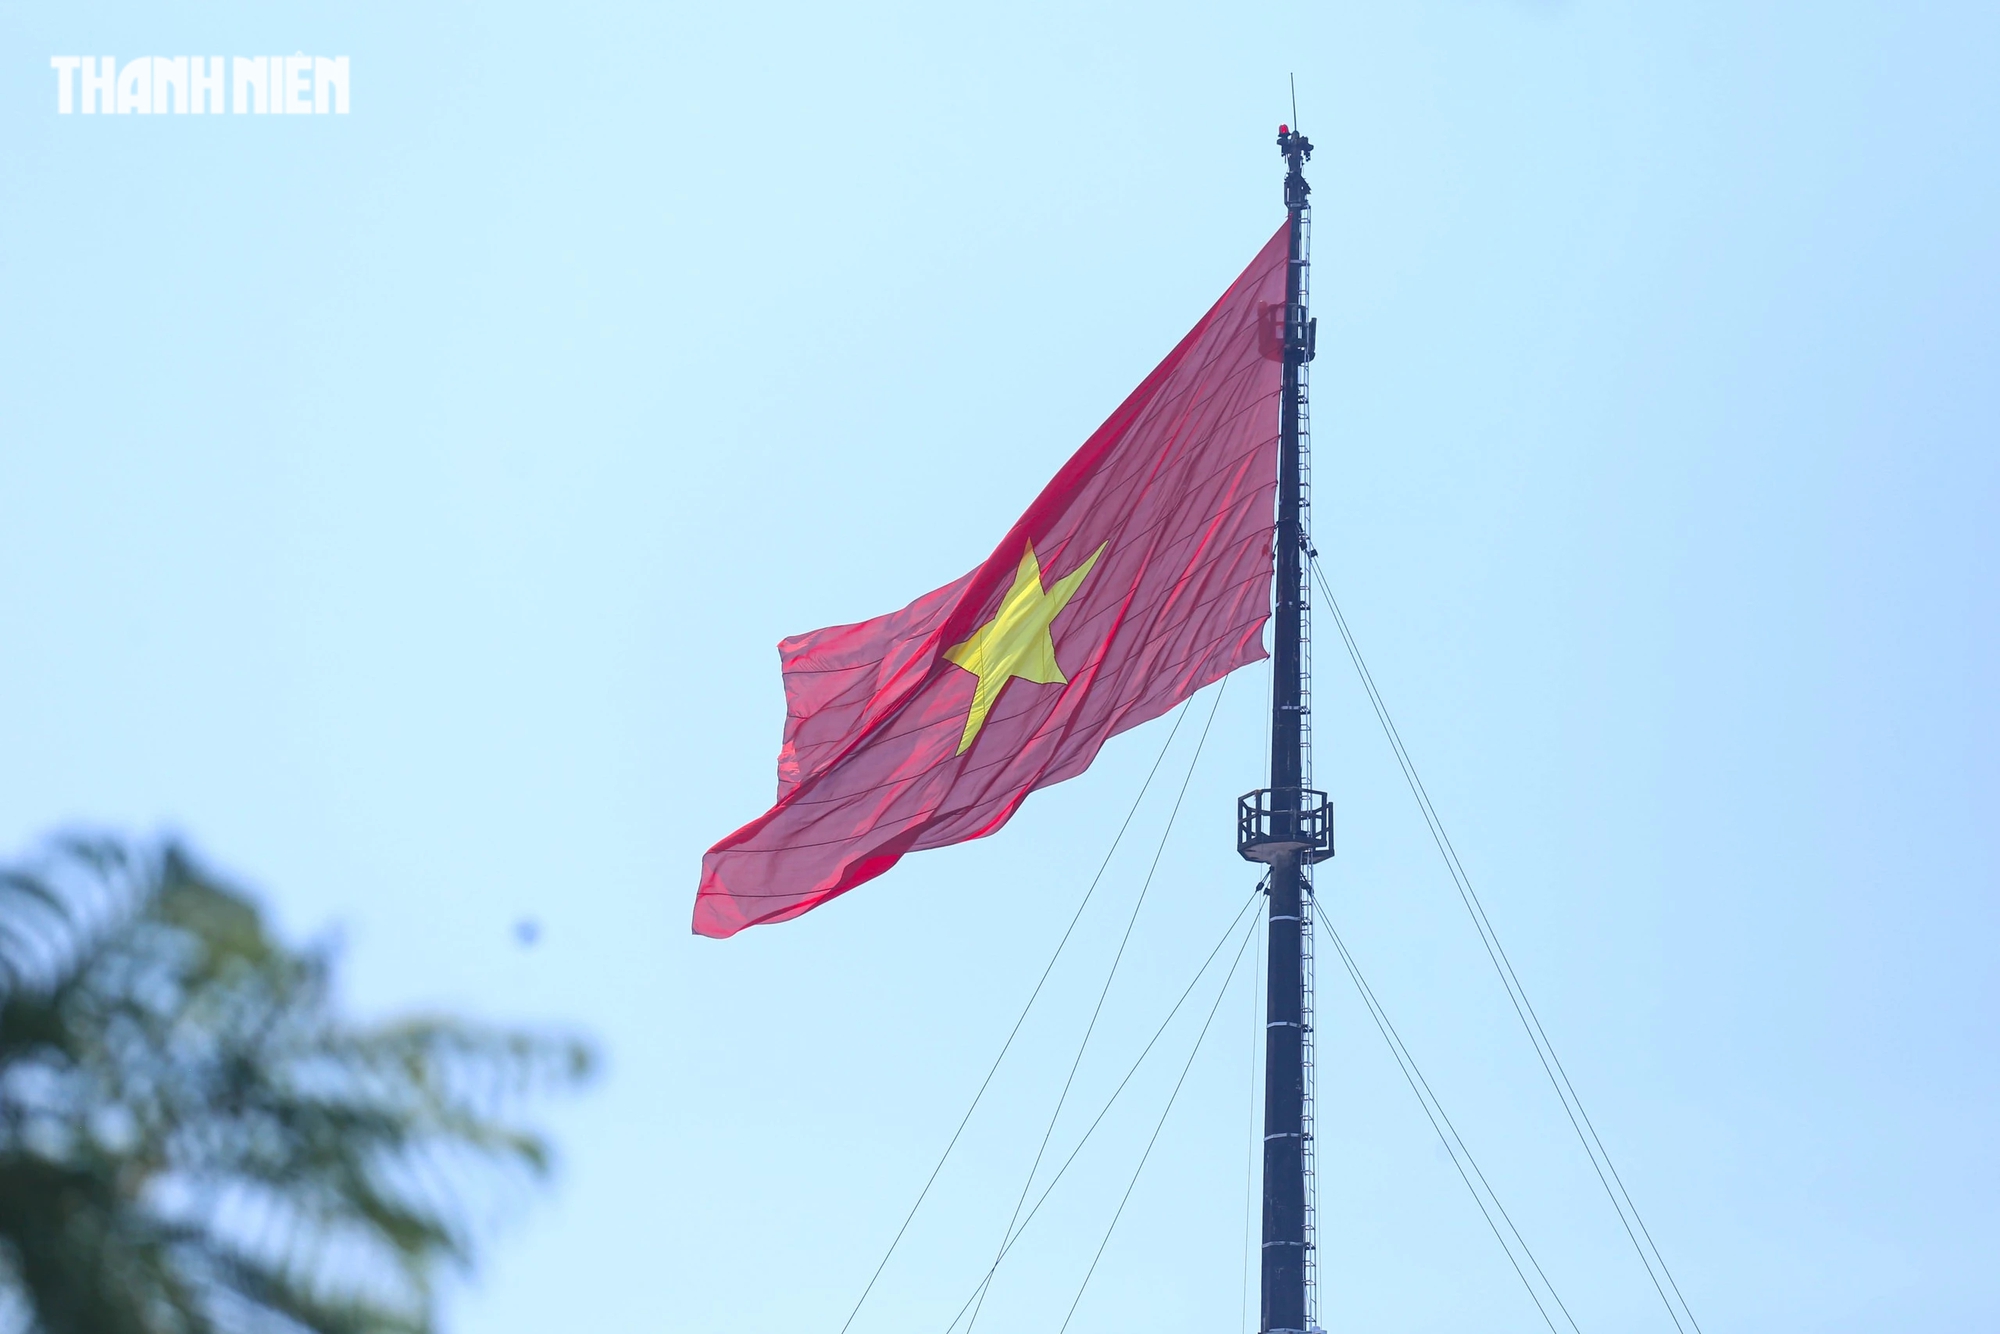 Kỳ Đài Huế là một trong những công trình triều Nguyễn nằm trong hệ thống di sản được UNESCO công nhận di sản văn hóa thế giới năm 1993. Hằng năm, đến các ngày lễ quan trọng, lá cờ Tổ quốc trên Kỳ đài sẽ được thay mới.